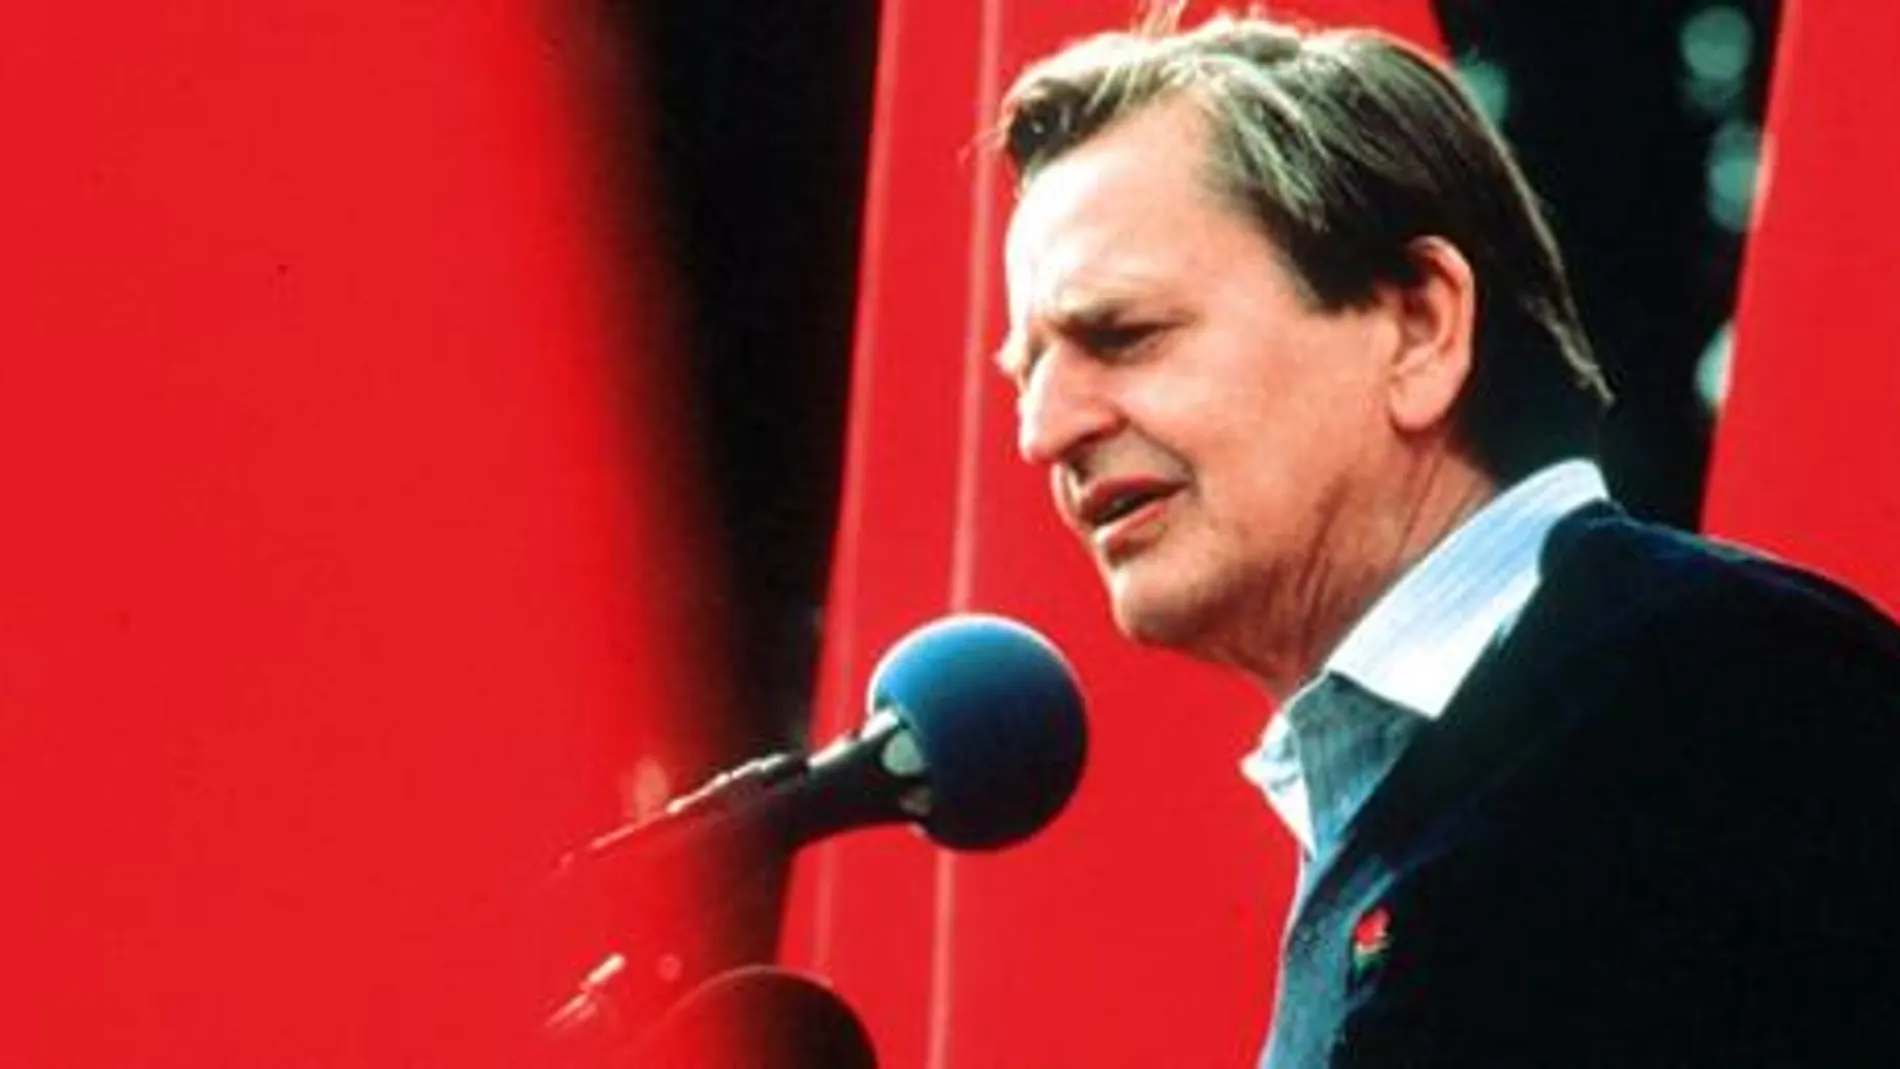 Olof Palme fue un paladín de la democracia y el desarme en todos los foros internacionales